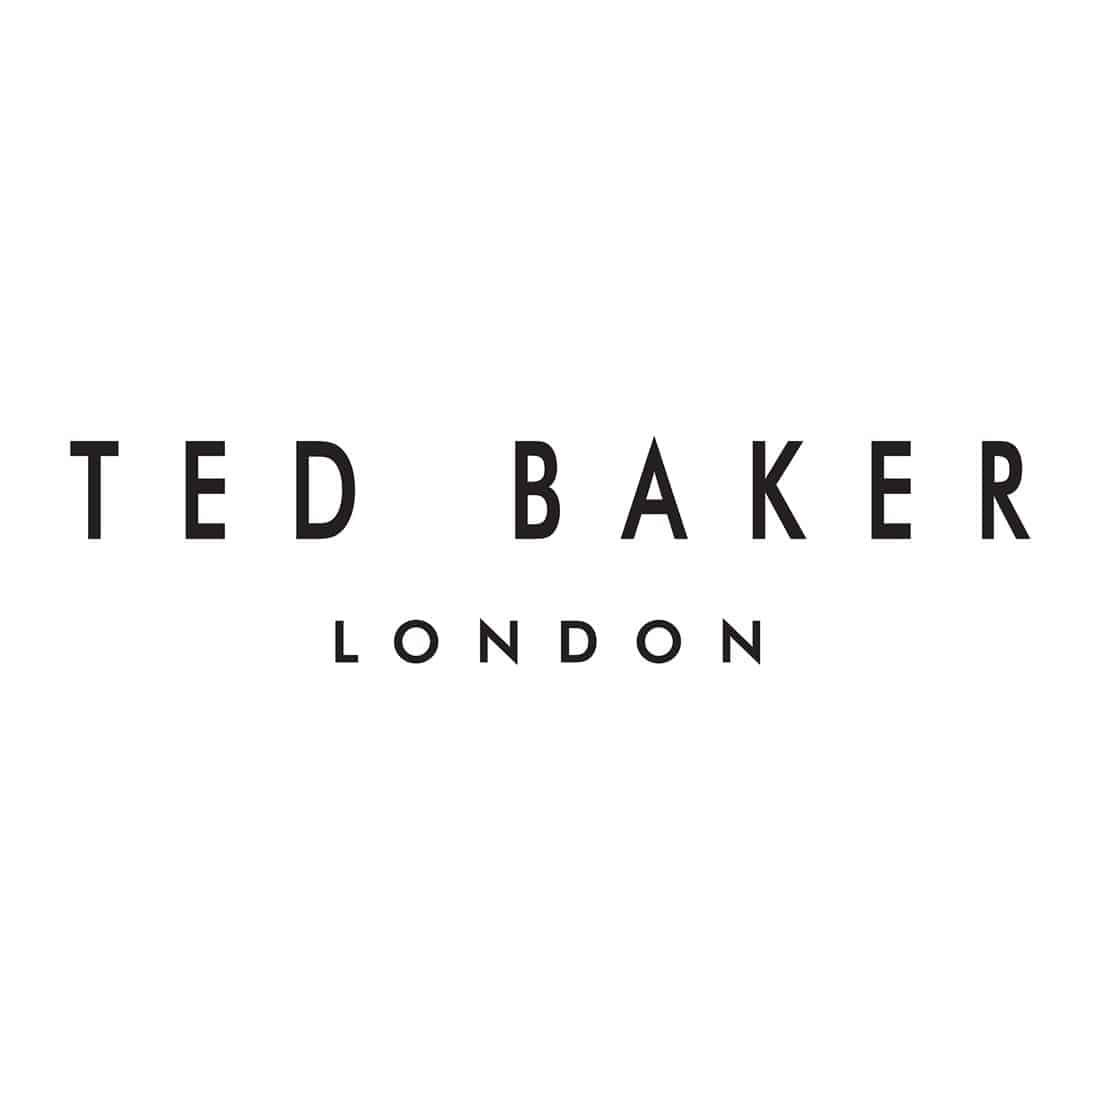 Ted Baker names new CFO